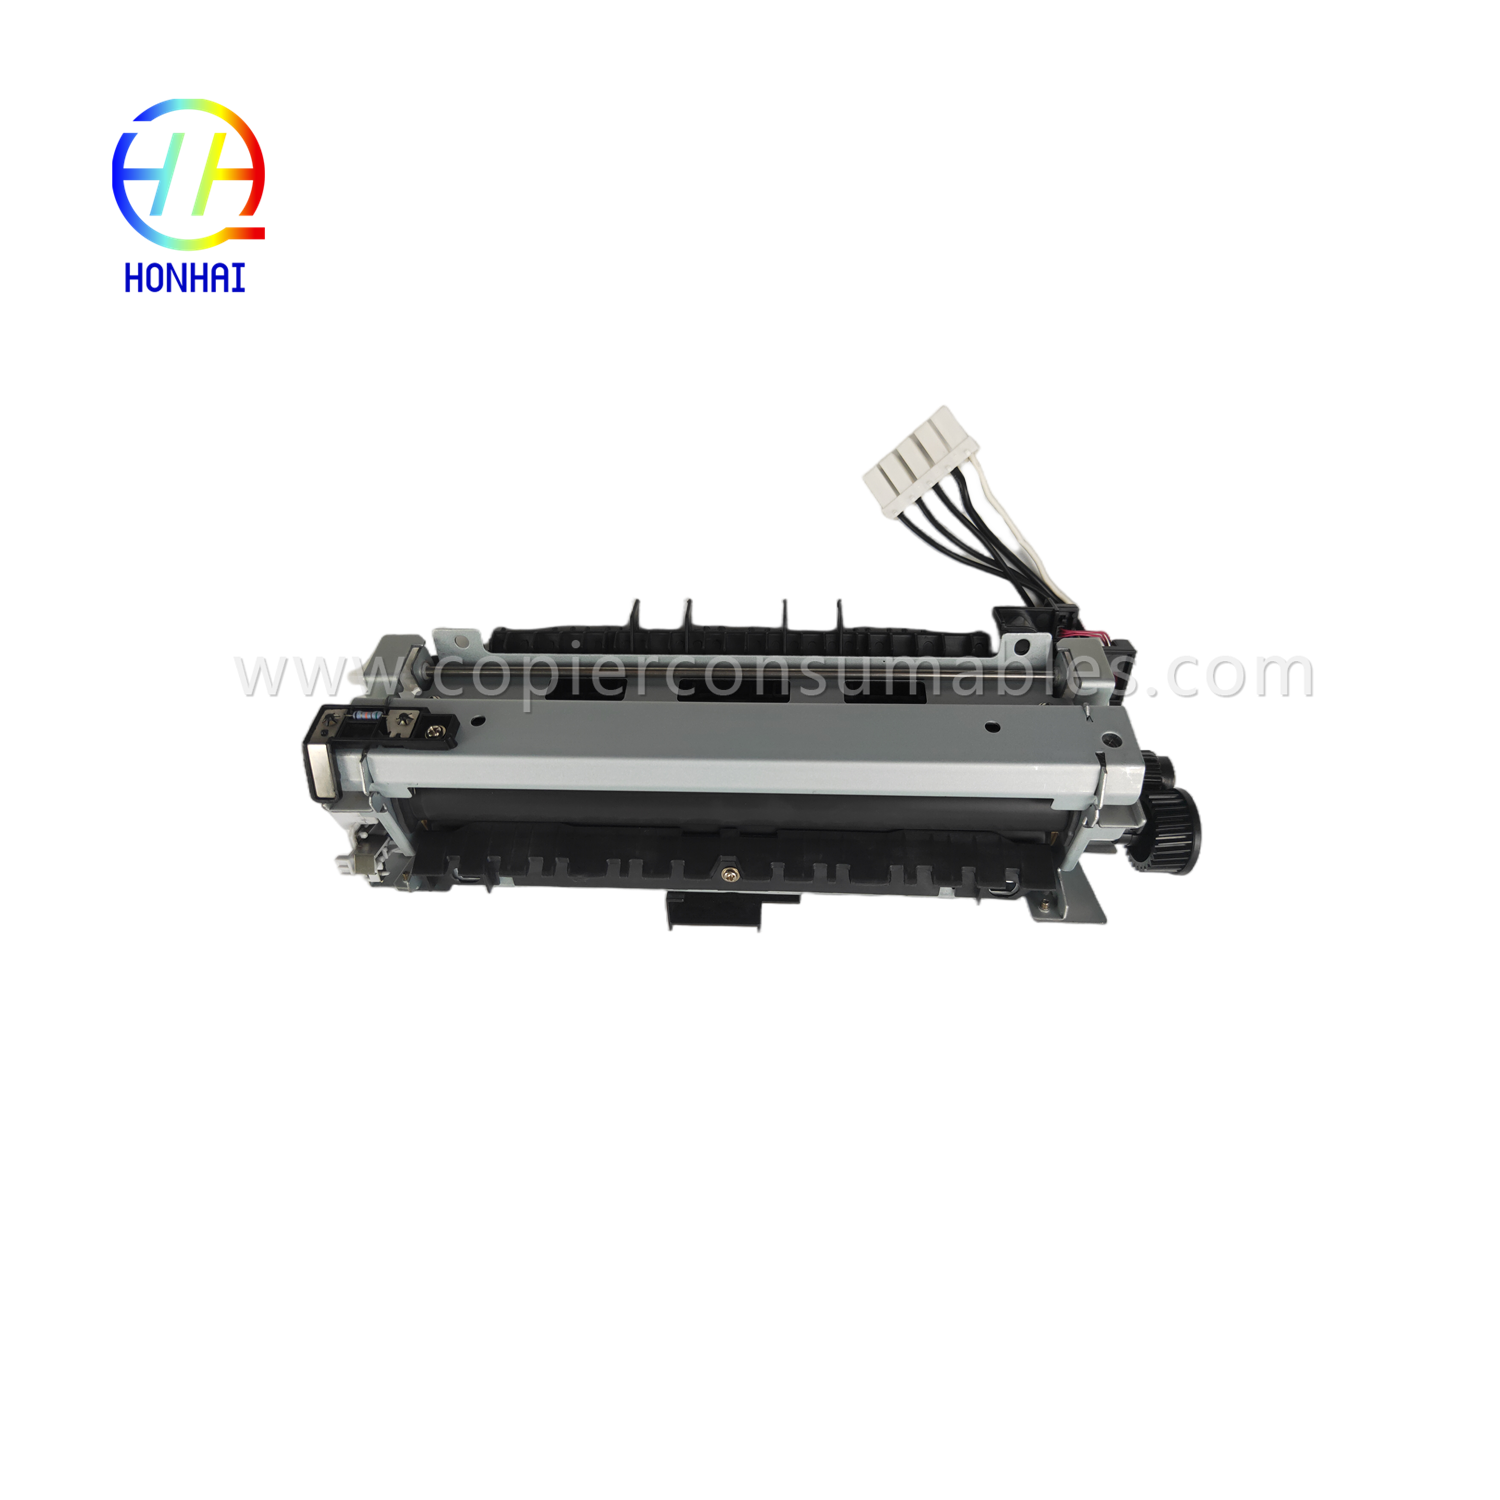 https://www.copierhonhaitech.com/fuser-assemble-220v-japan-for-hp-521-525-m521-m525-rm1-8508-rm1-8508-000-fuser-unit-2-product/